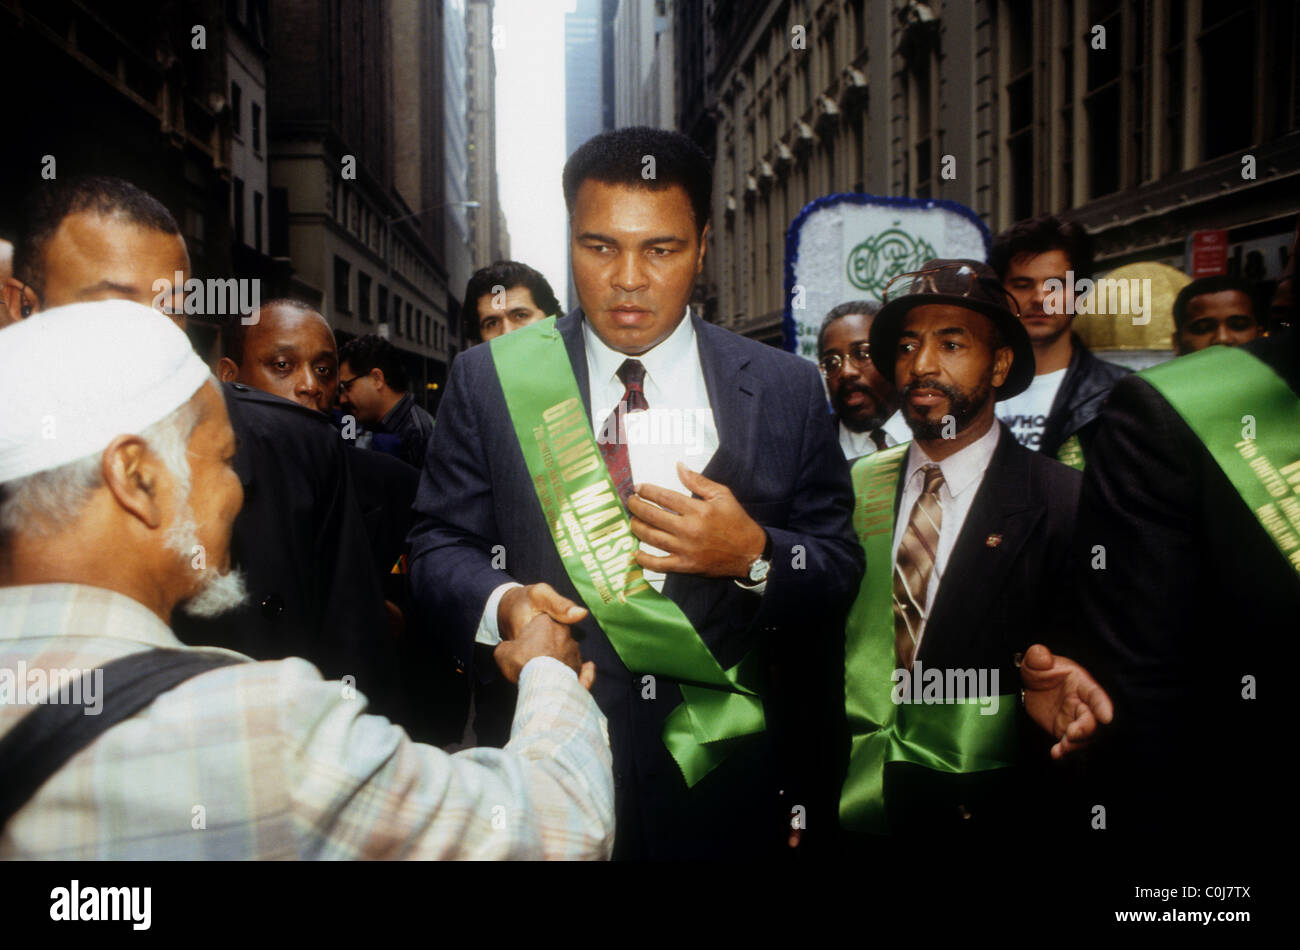 Legenda boxe Muhammad Ali (C) appare come il Gran Maresciallo del mondo musulmano parata del giorno Foto Stock